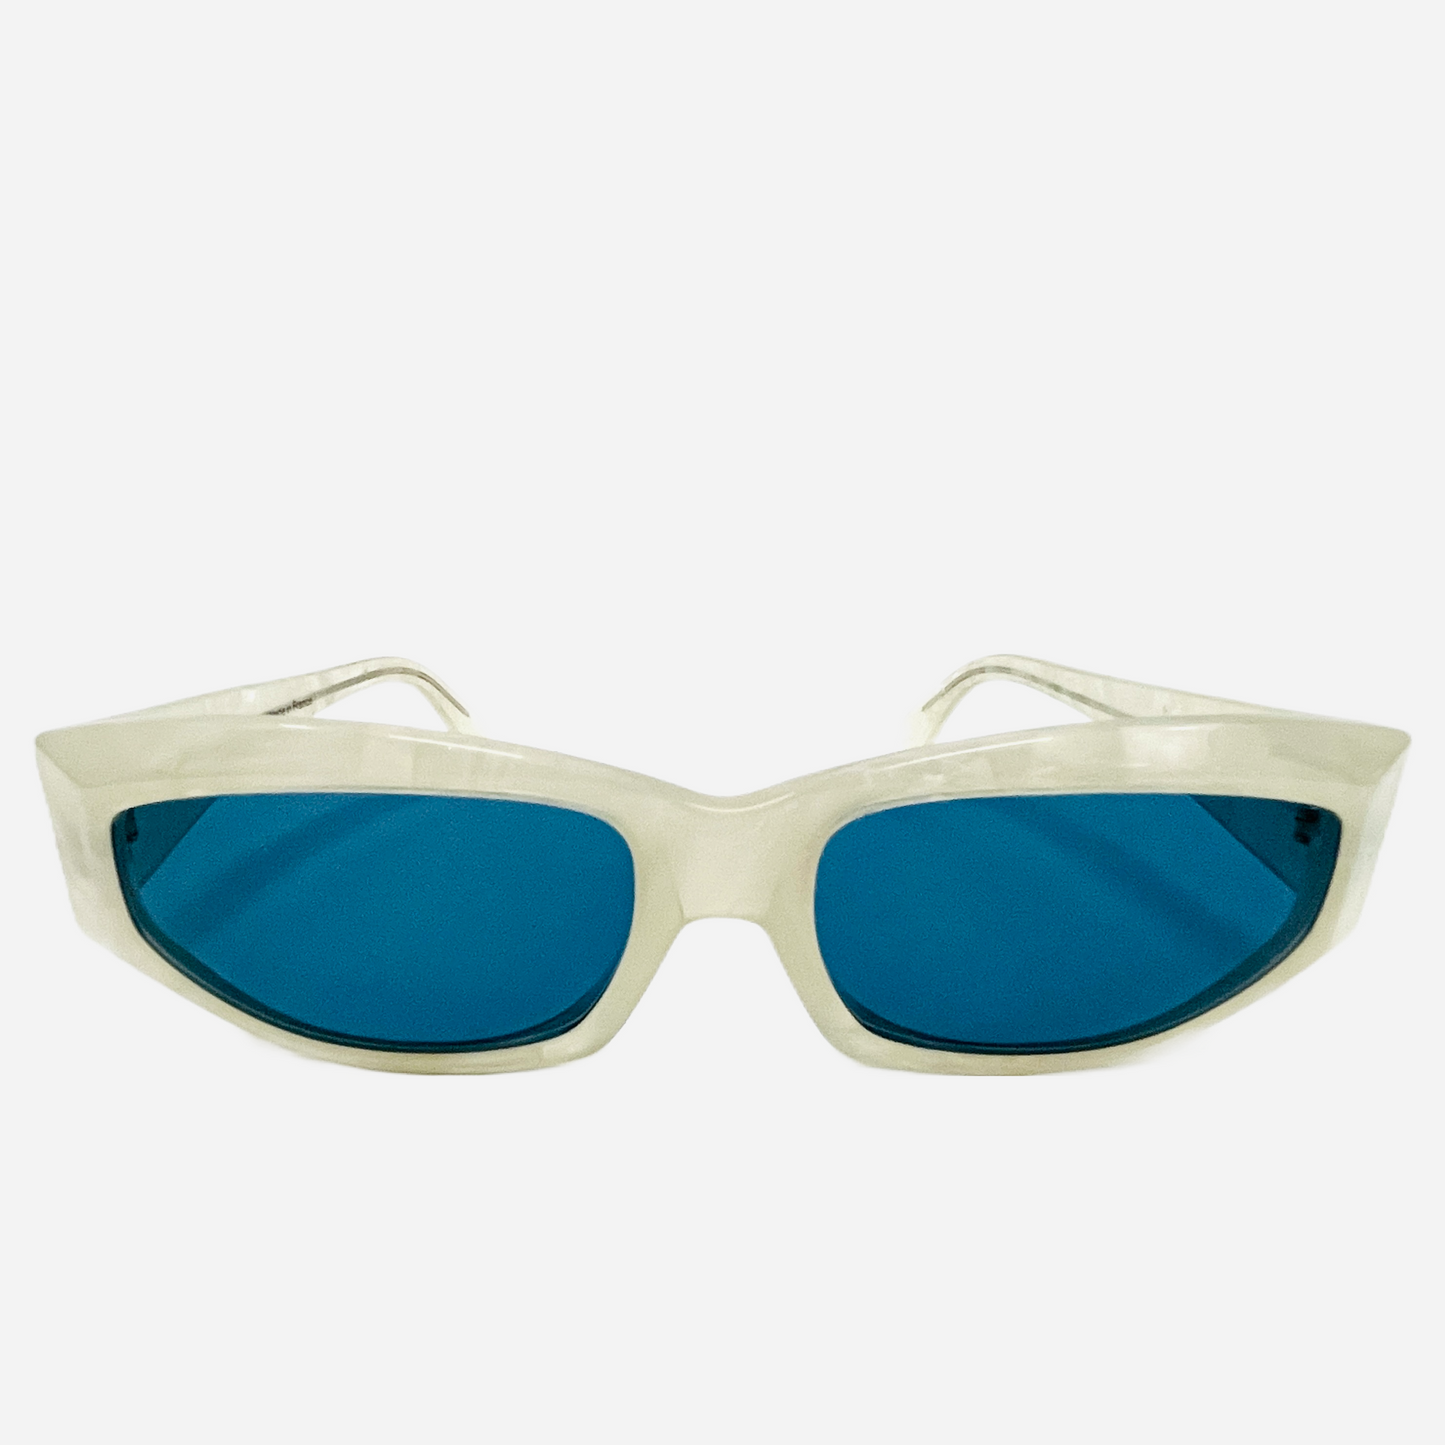 ALAIN-MIKLI-Sonnenbrille-Sunglasses-3101-809-Ansolet